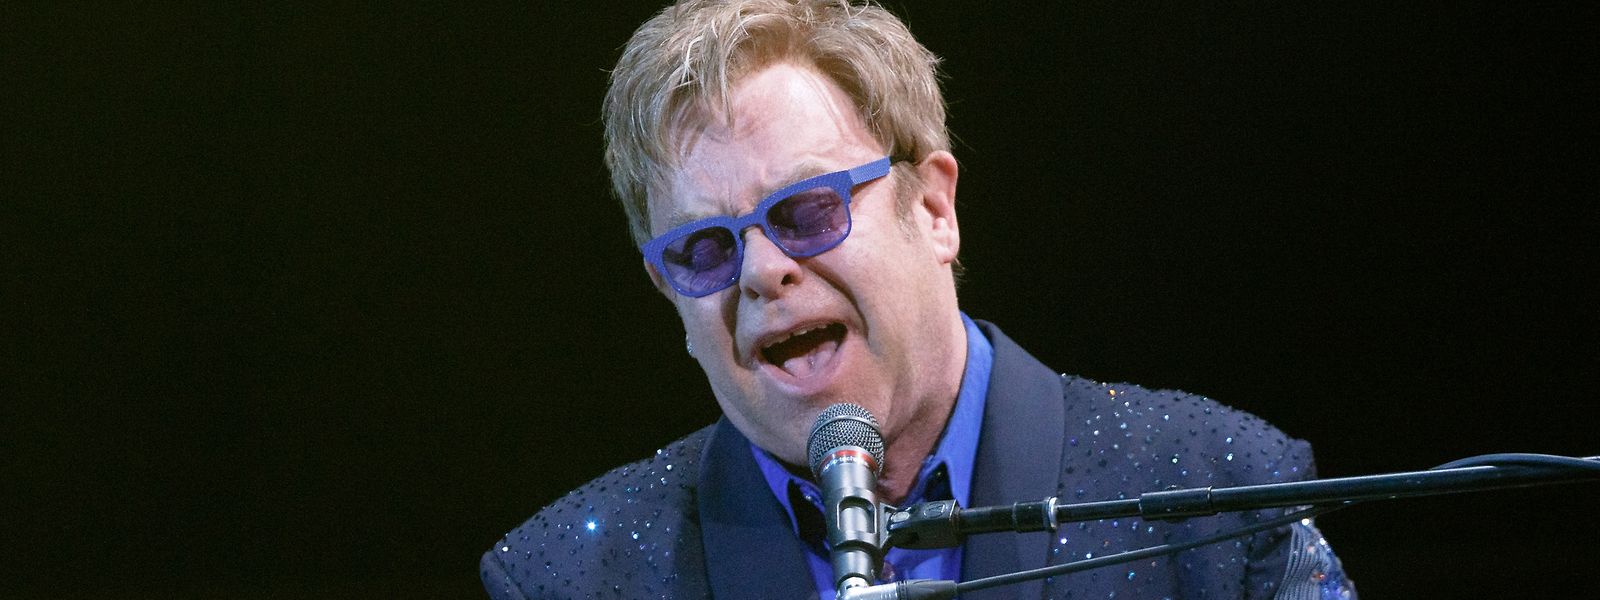 Elton John wird 75 und ist bereits auf Abschiedstournee. Dreimal war er in Luxemburg, stets vor einer generationsübergreifenden Fangemeinschaft.